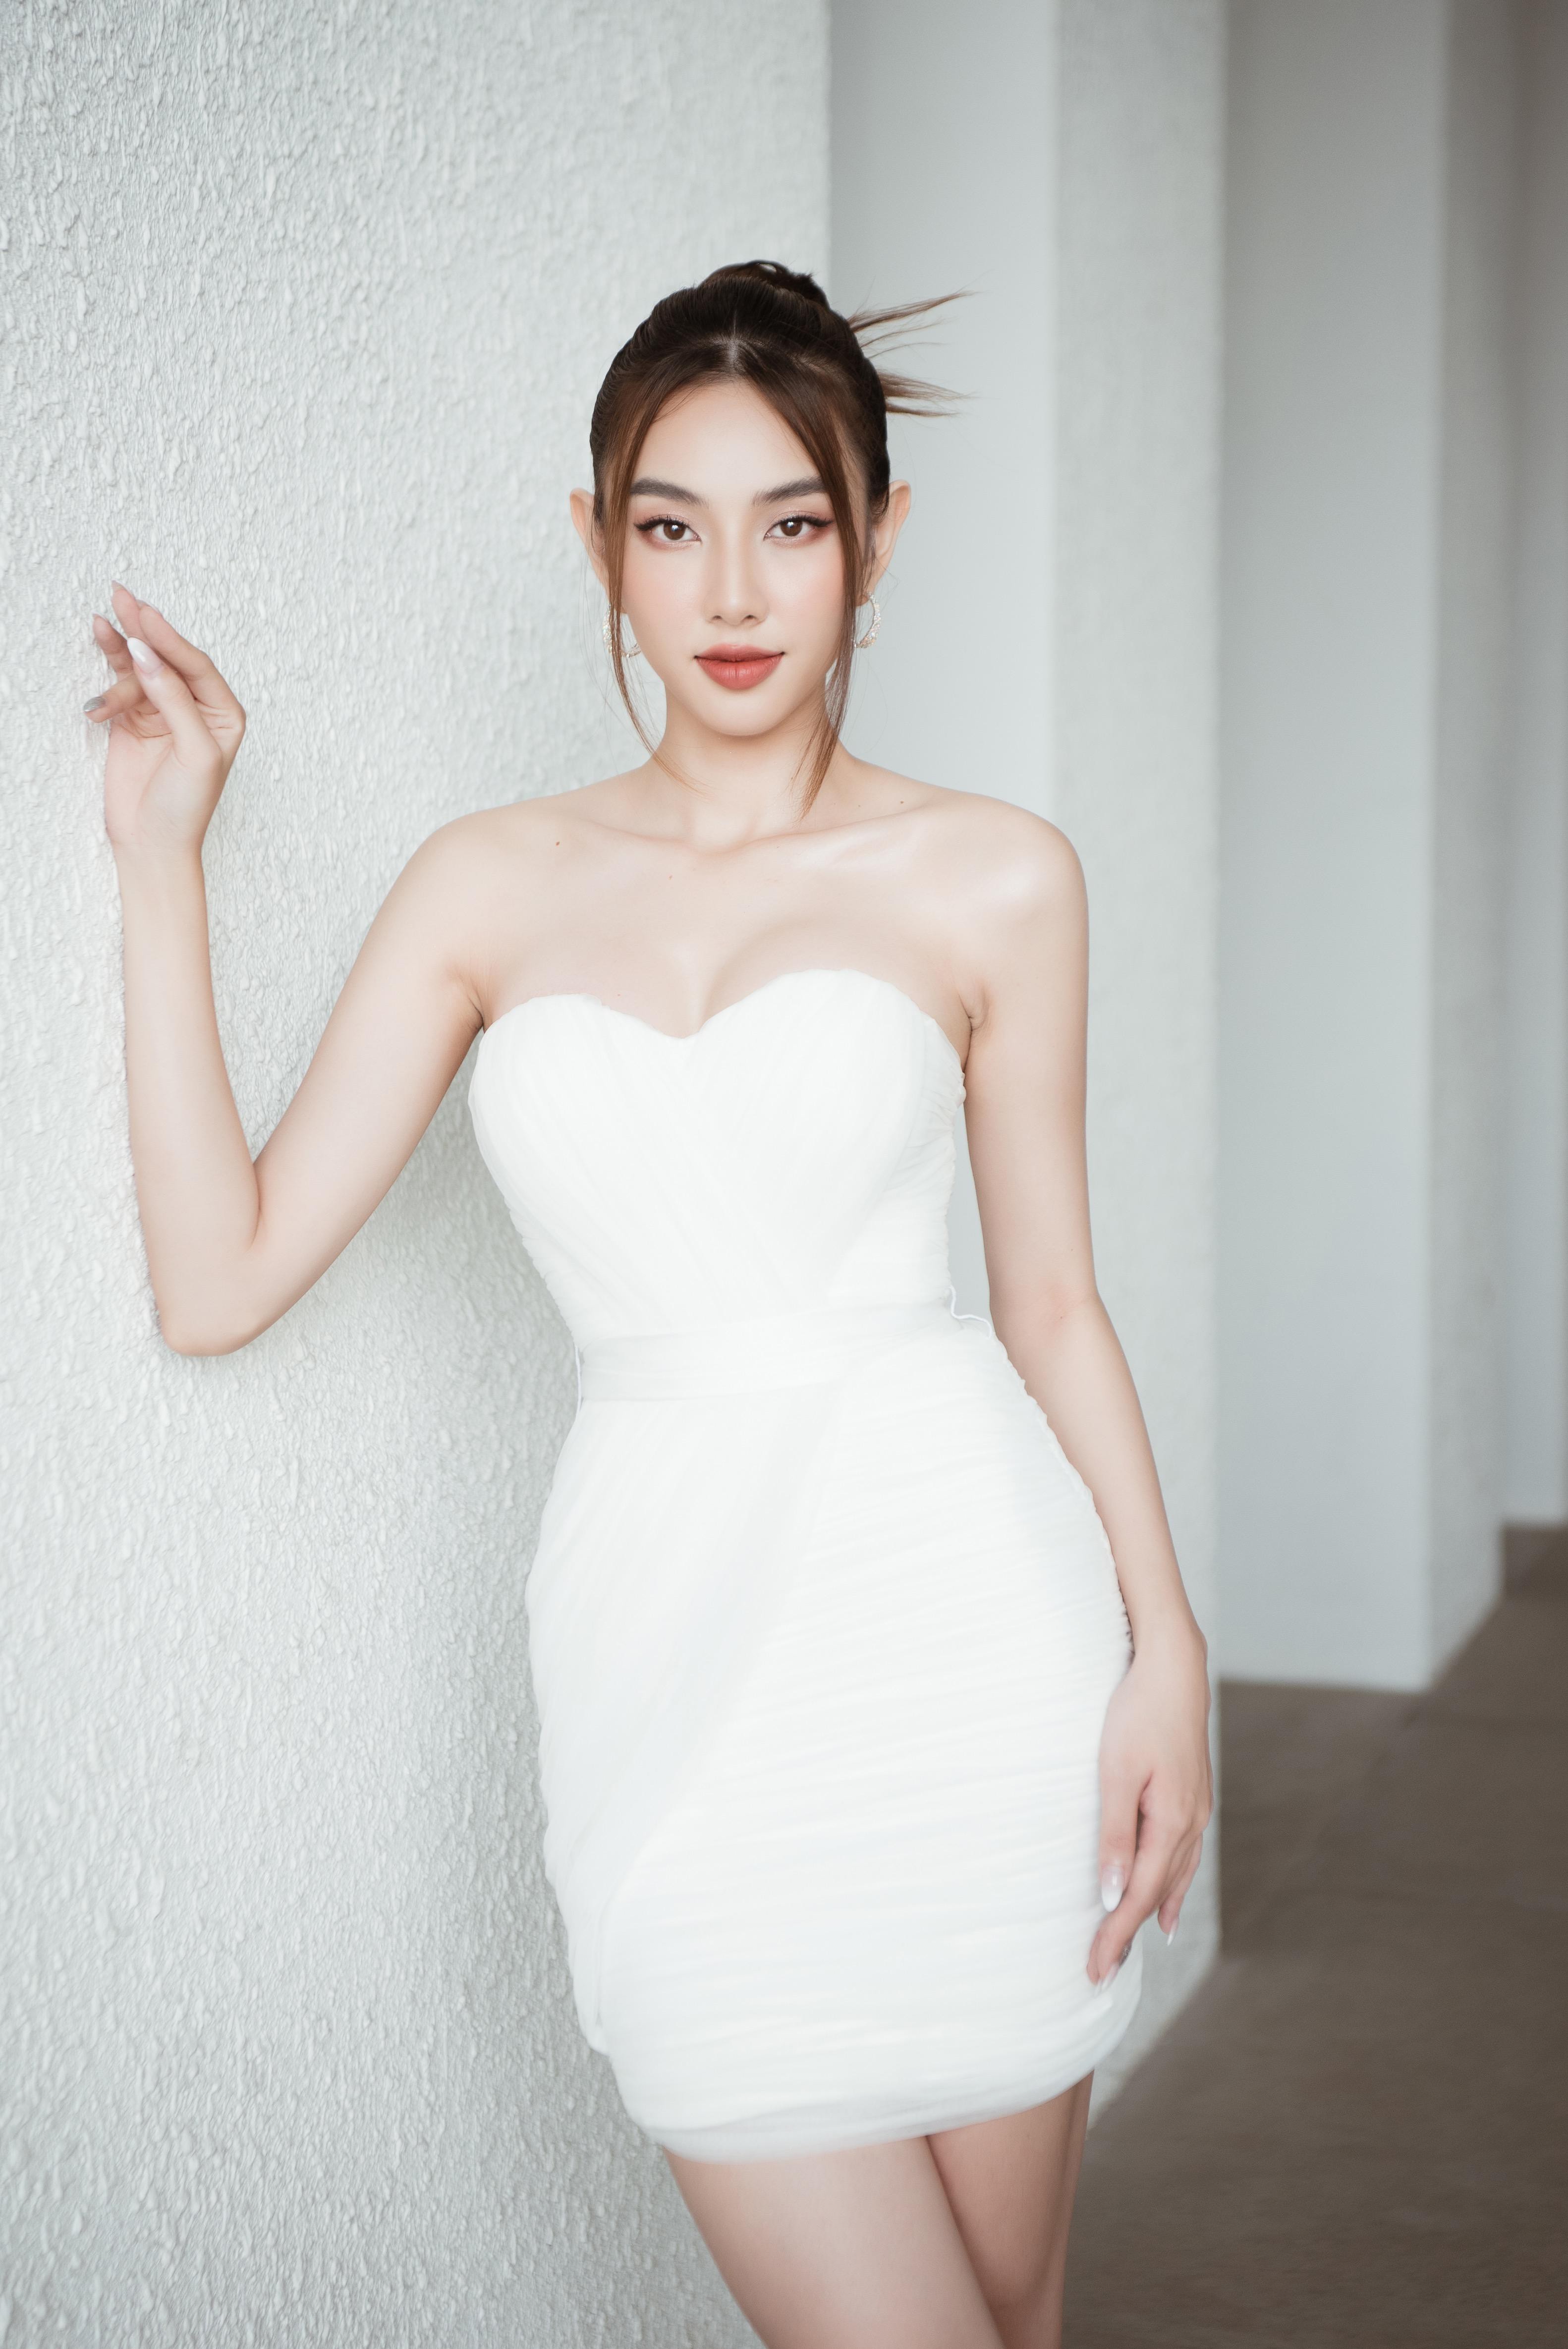 Dàn Hoa, Á hậu diện váy áo cúp ngực gợi cảm trong buổi talkshow tại ĐH Văn Lang - Ảnh 8.